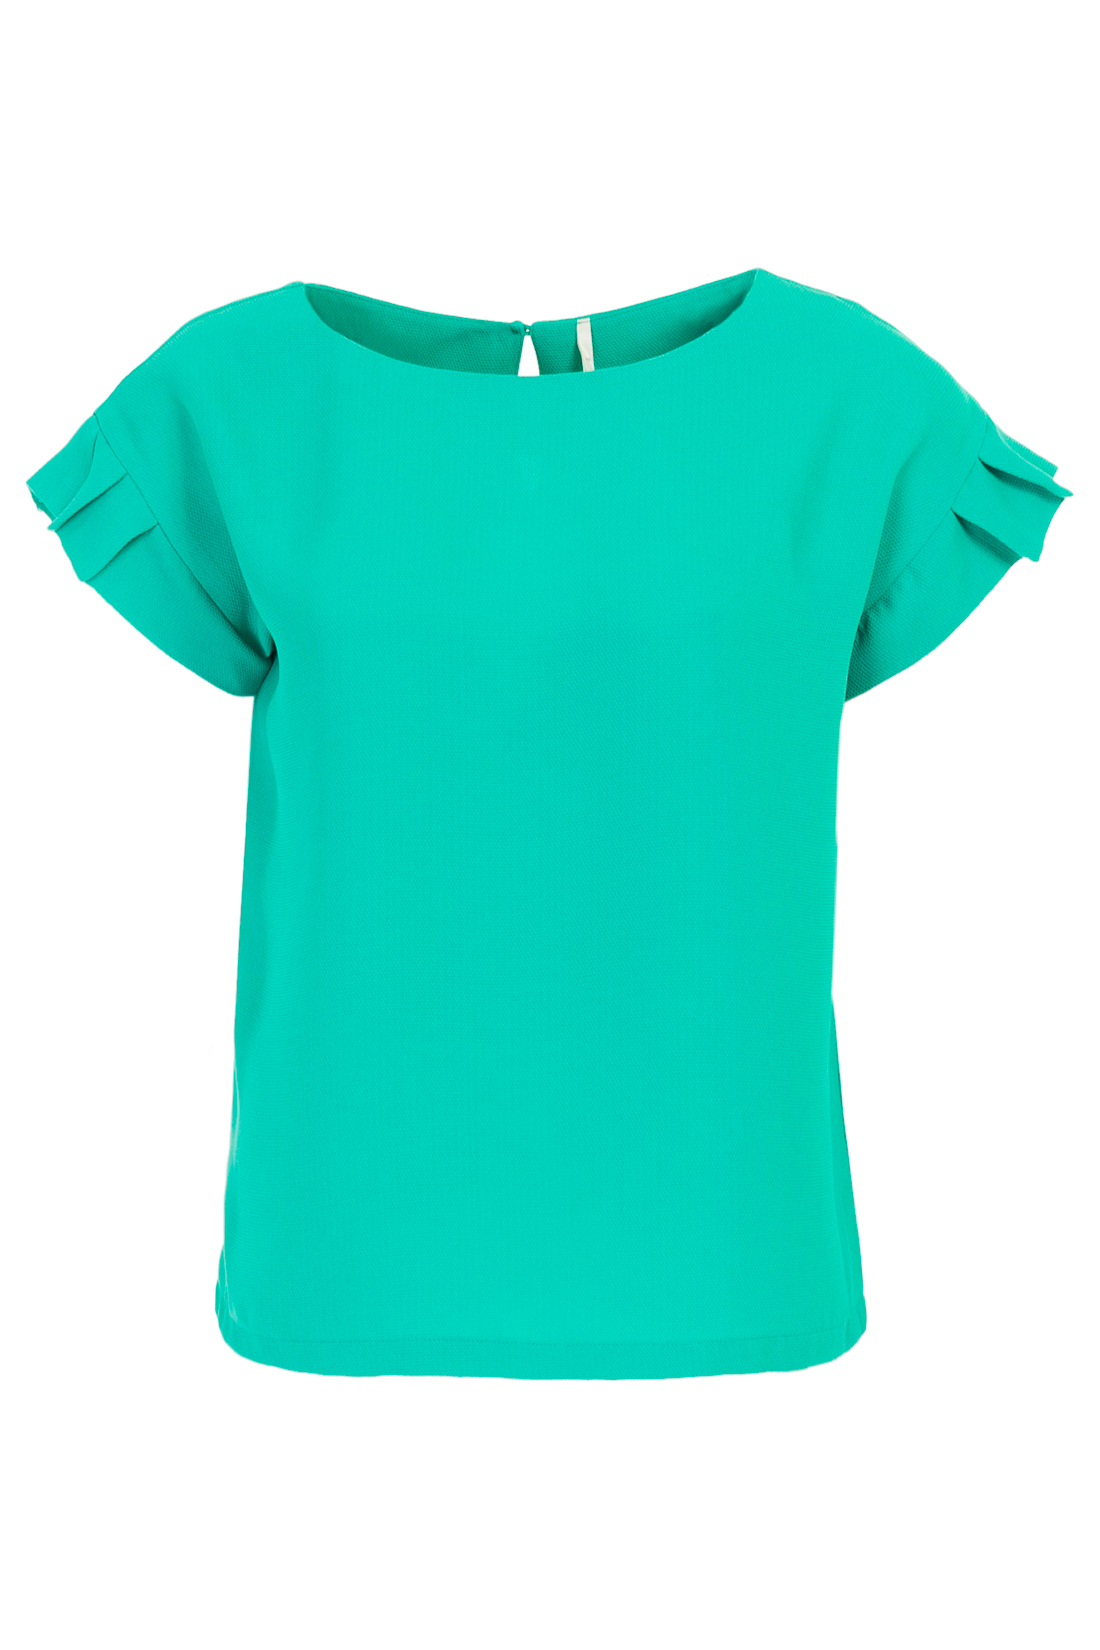 Блузка с рукавами-гофре (арт. baon B197018), размер XXL, цвет зеленый Блузка с рукавами-гофре (арт. baon B197018) - фото 5